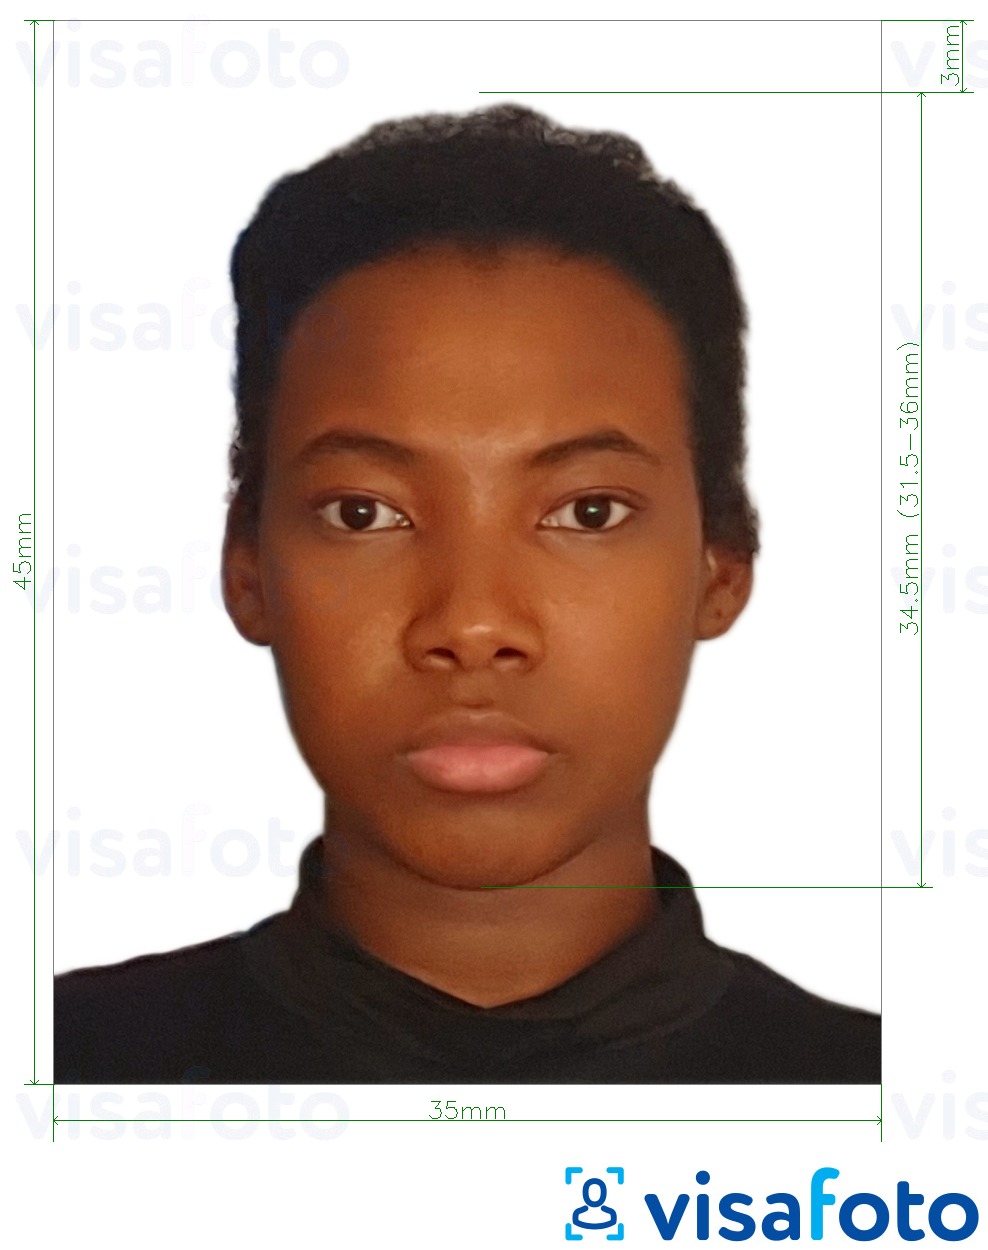 Voorbeeld van foto voor Fiji paspoort 35x45 mm (3,5x4,5 cm) met exacte maatspecificatie